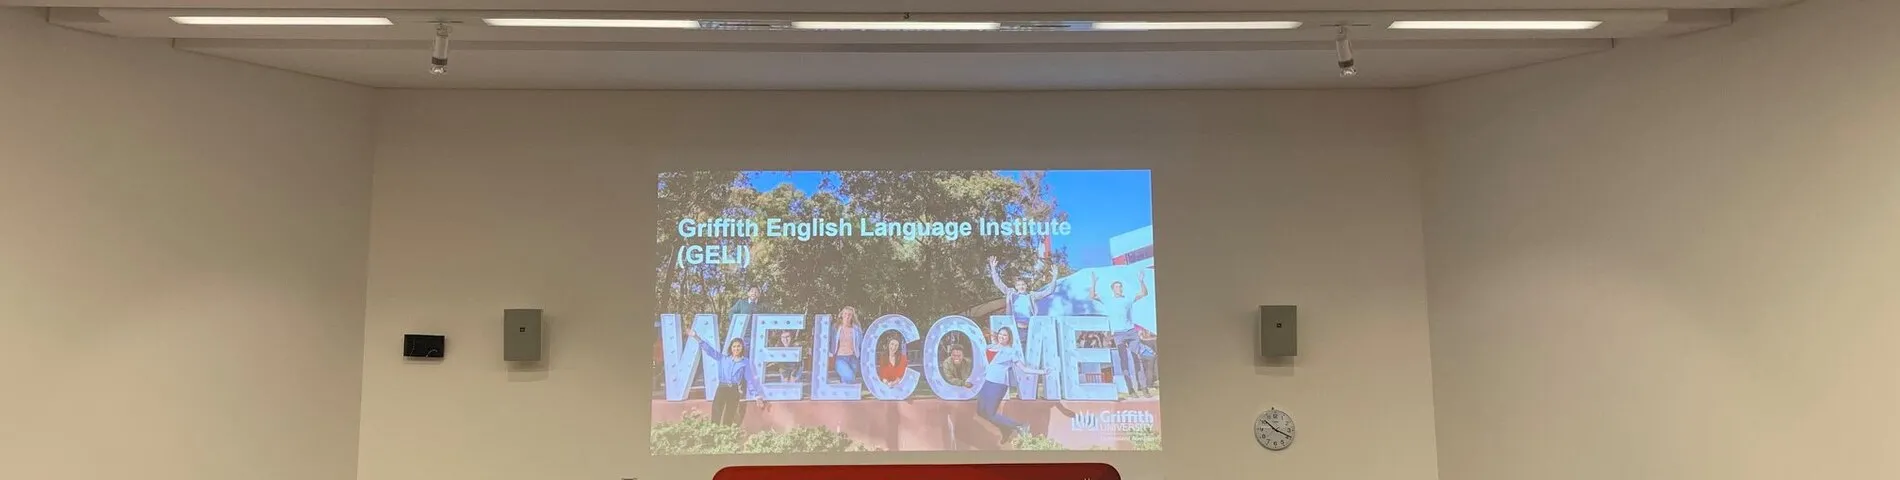 Griffith English Language Institute resim 1